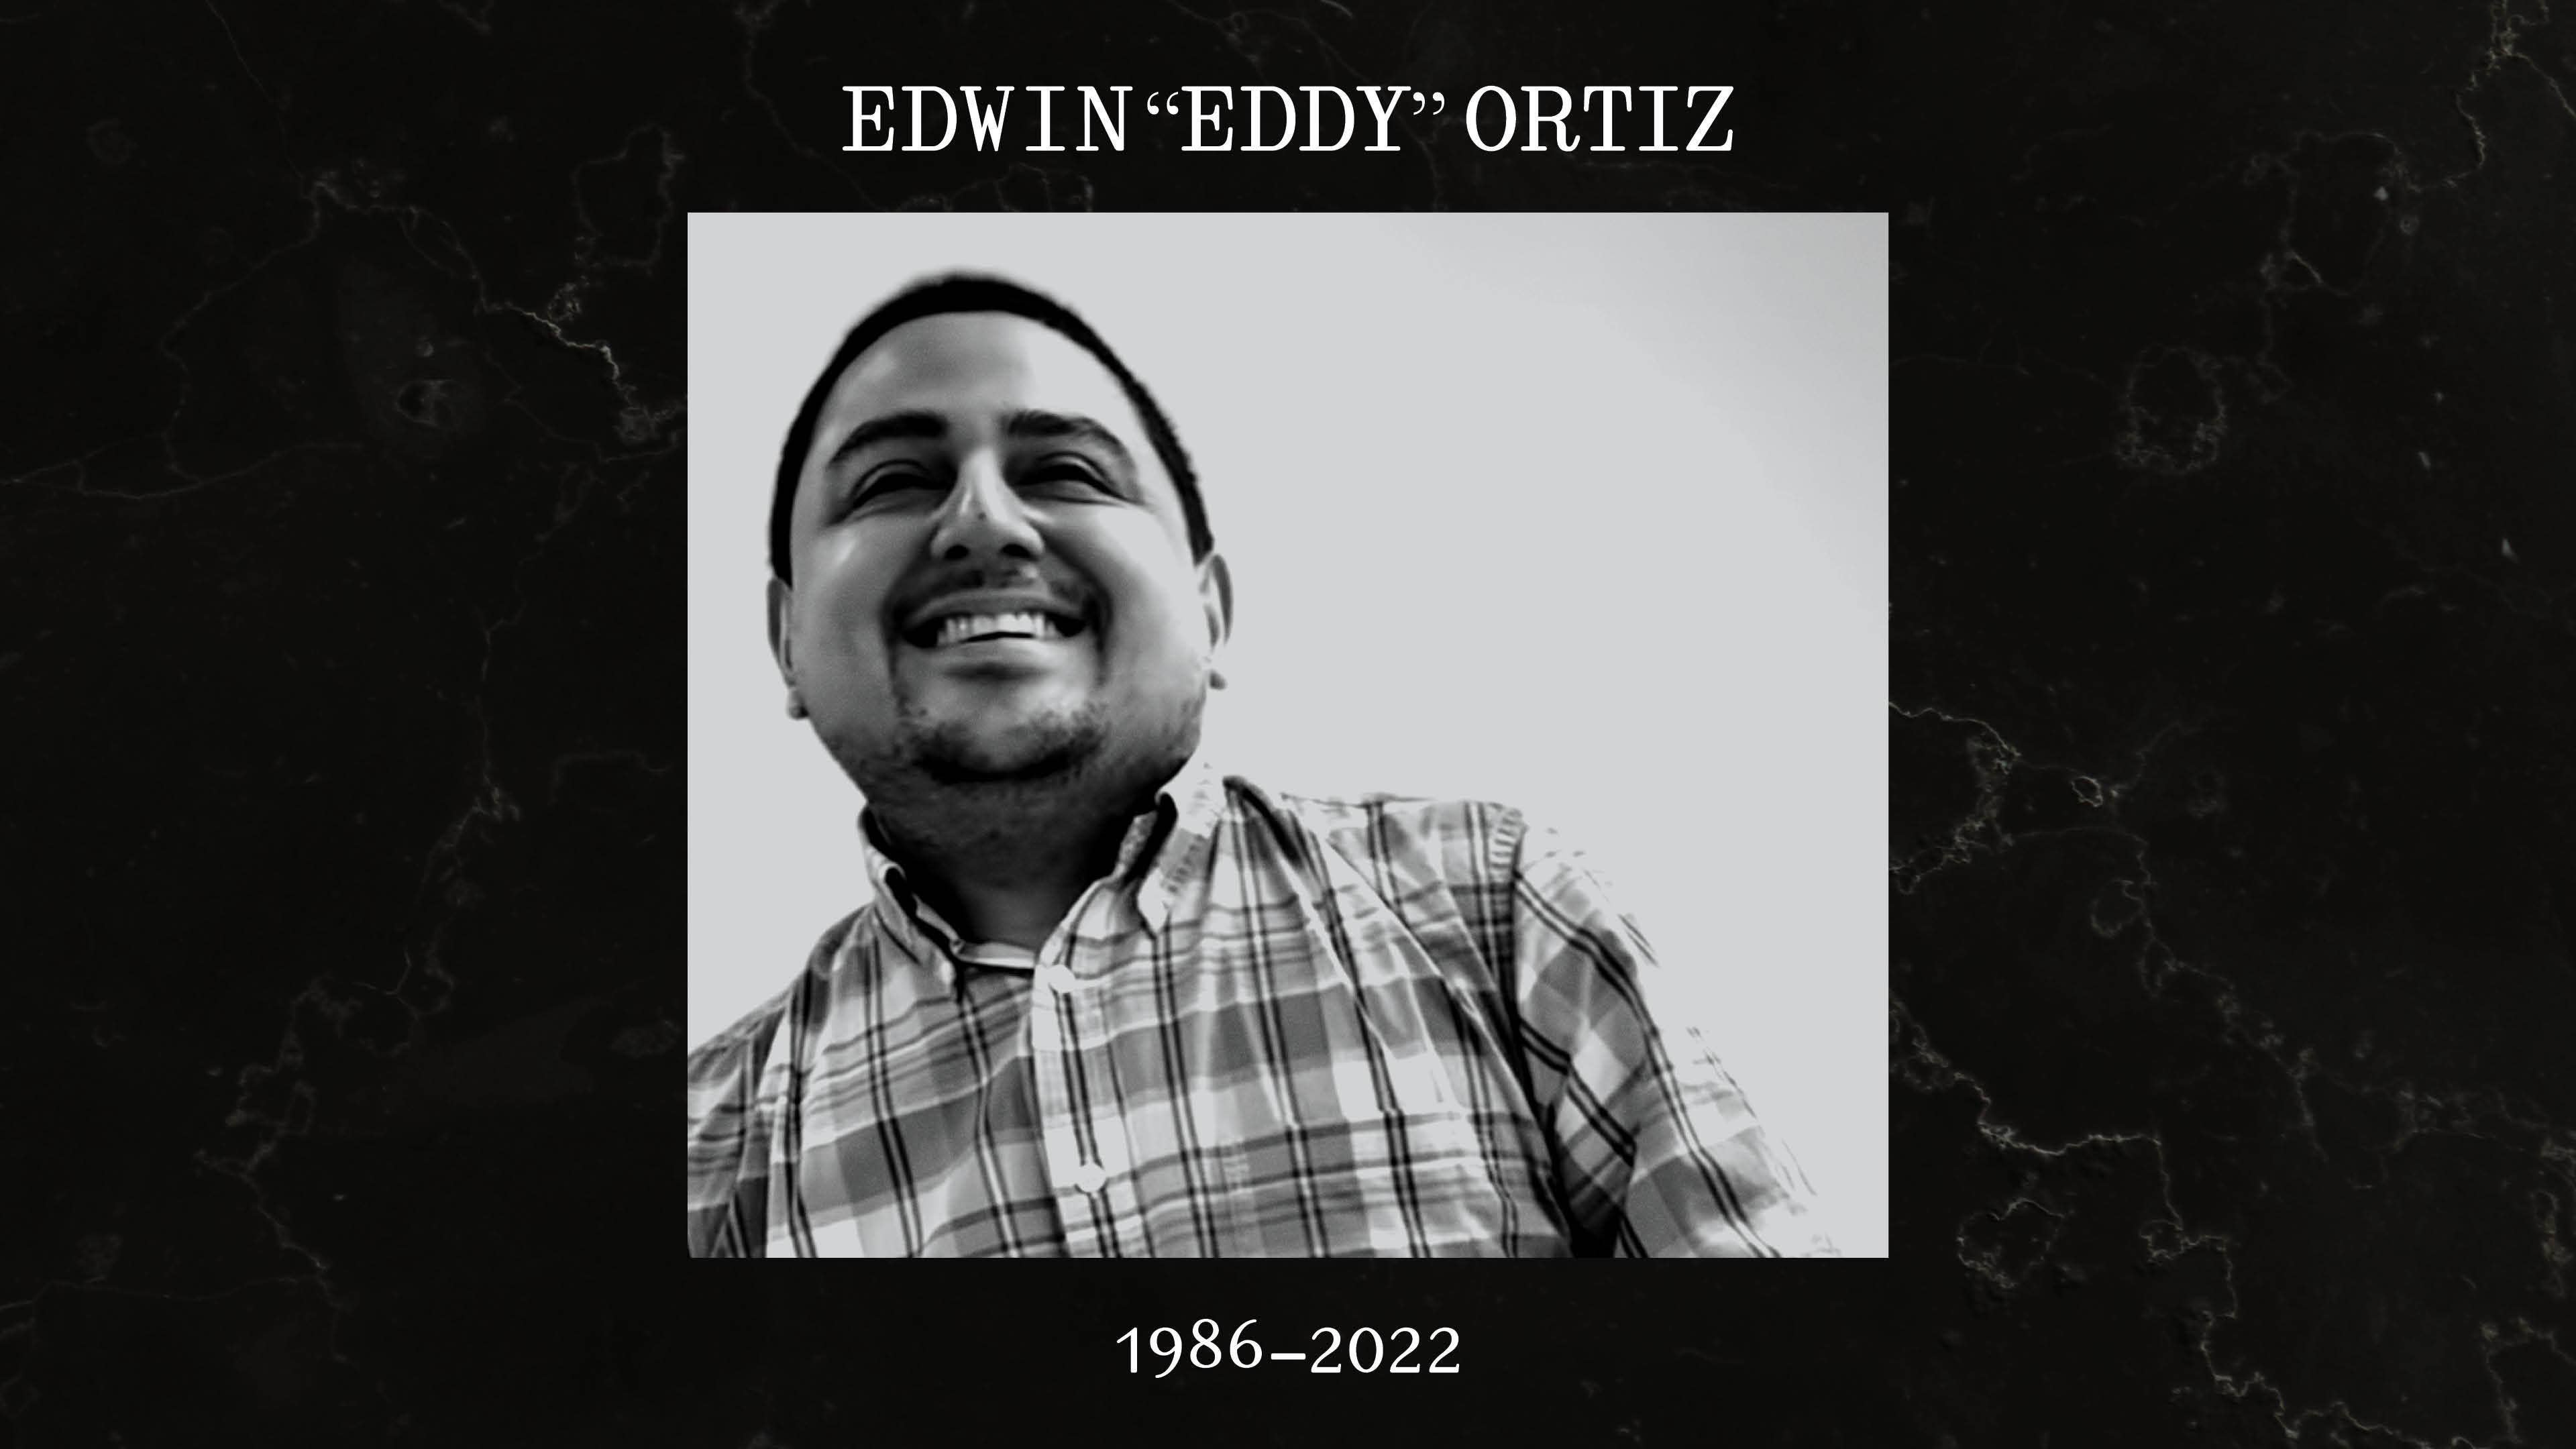 In loving memory of Edwin "Eddy" Ortiz